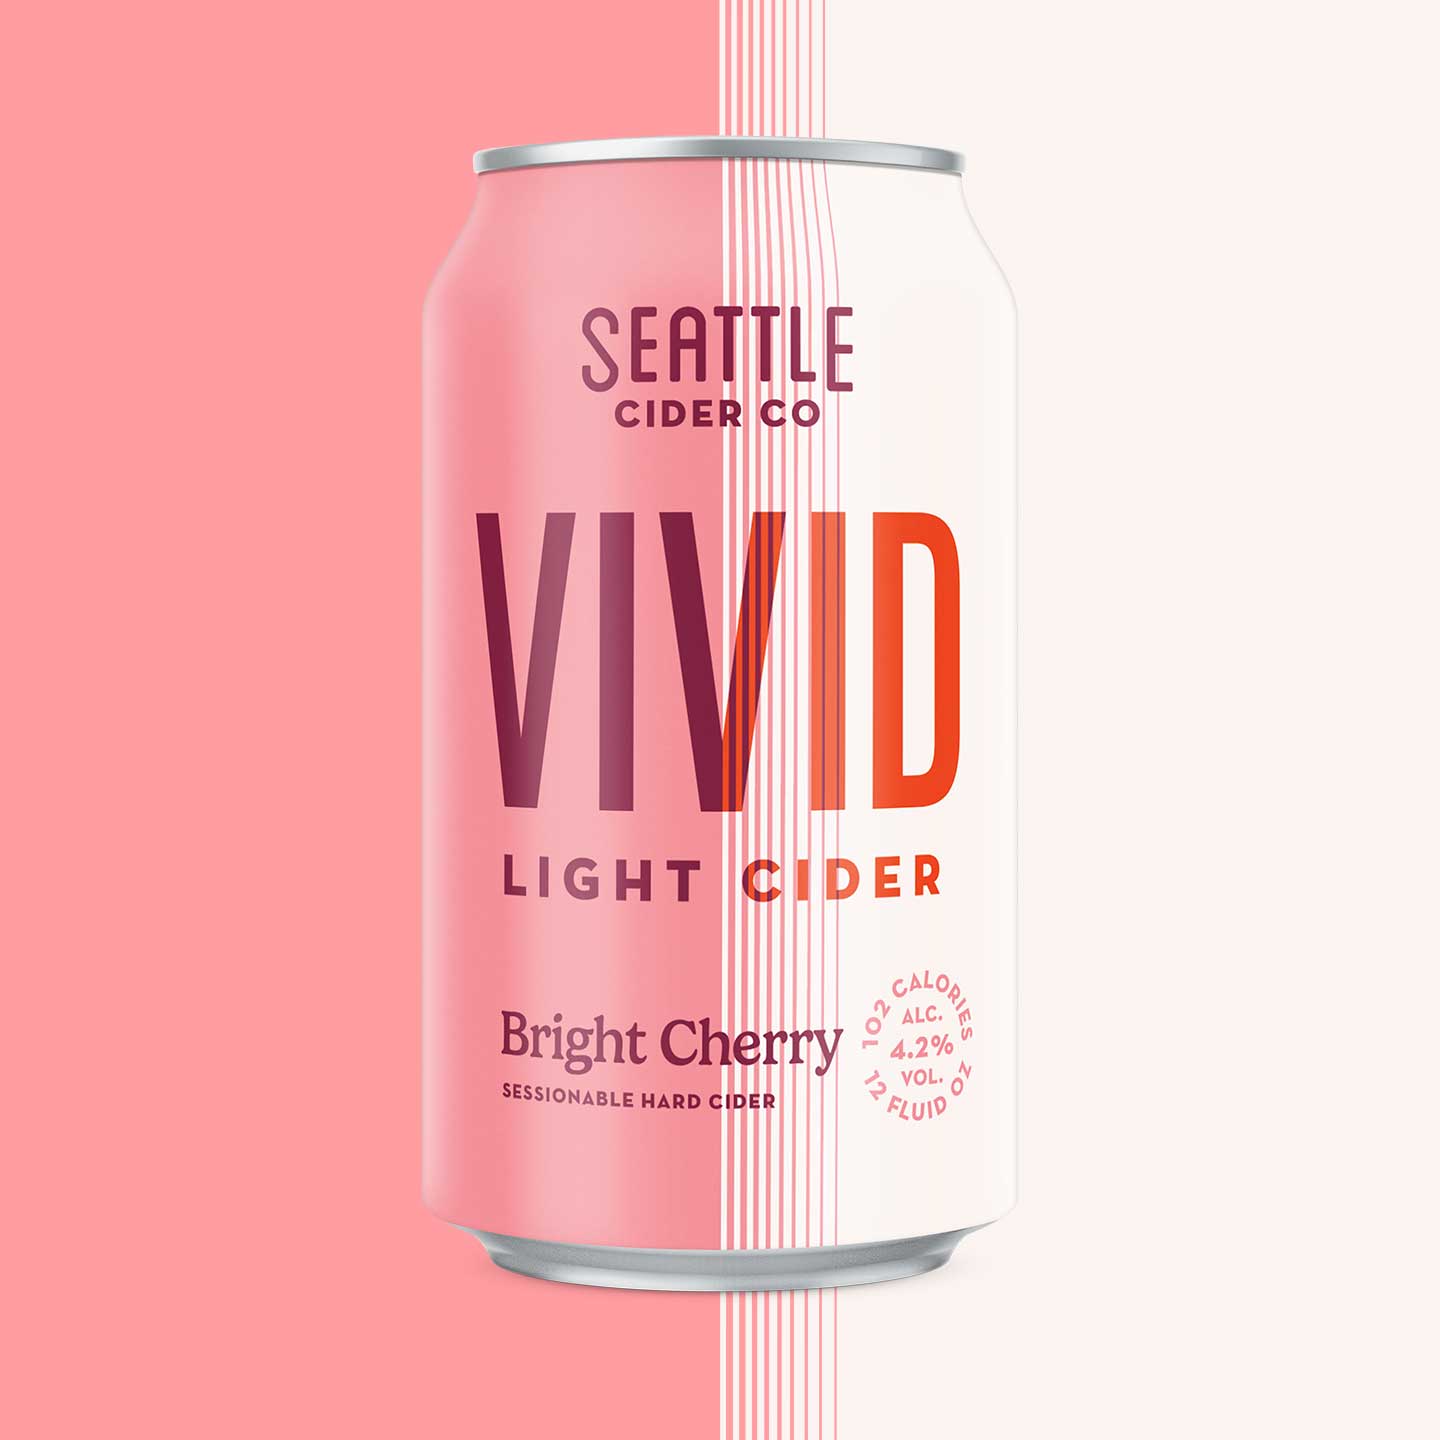 VIVID Light Cider